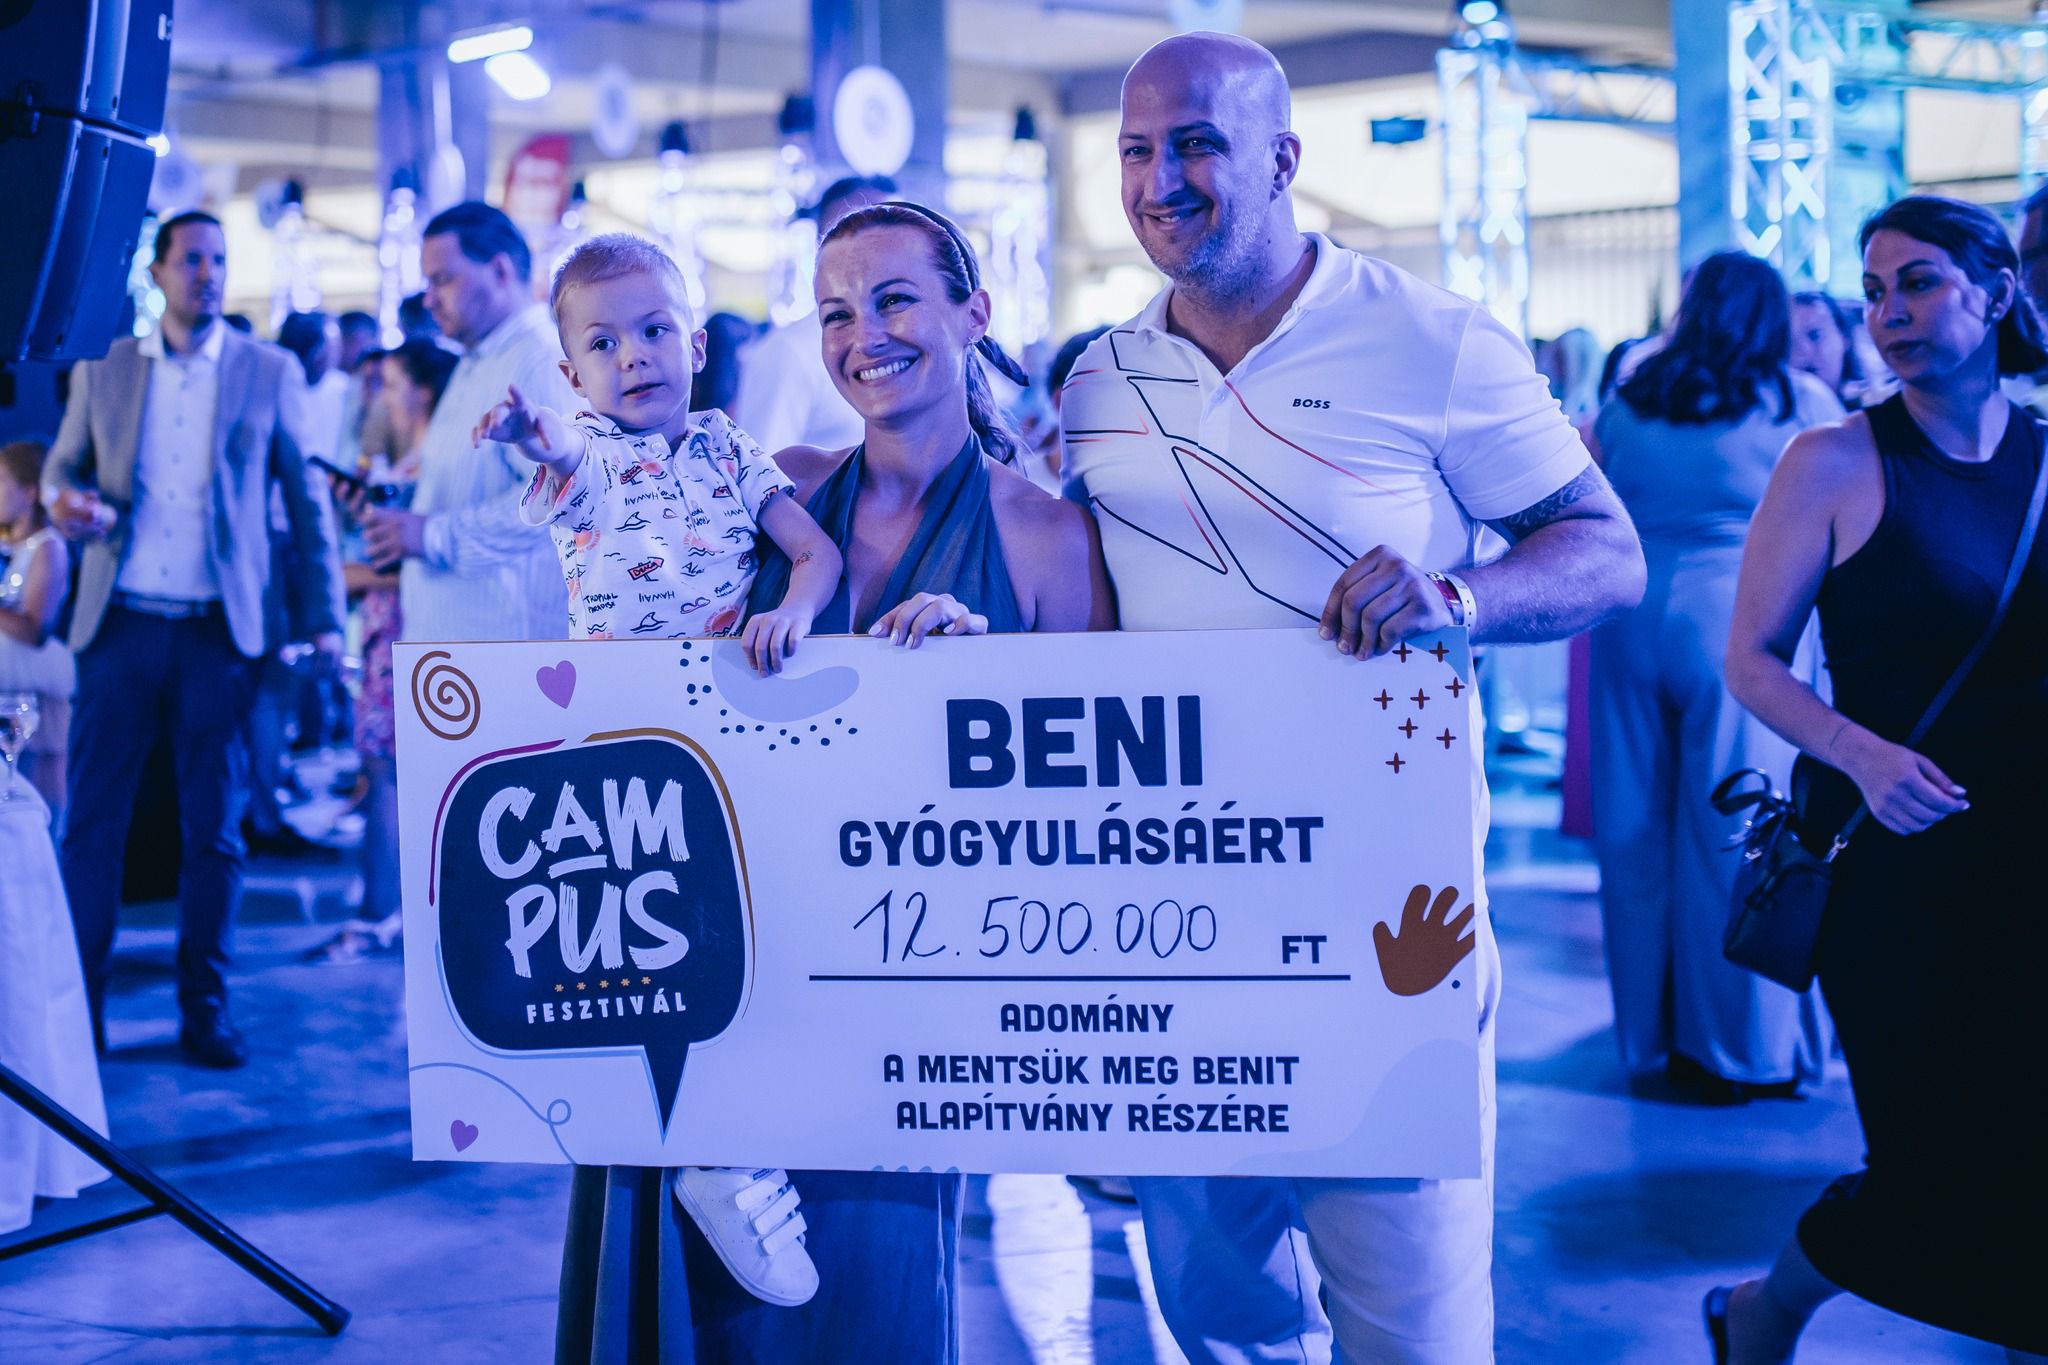 A Campus Fesztivál a segítségről is szól: 12,5 millióval támogatták a nagybeteg Benit